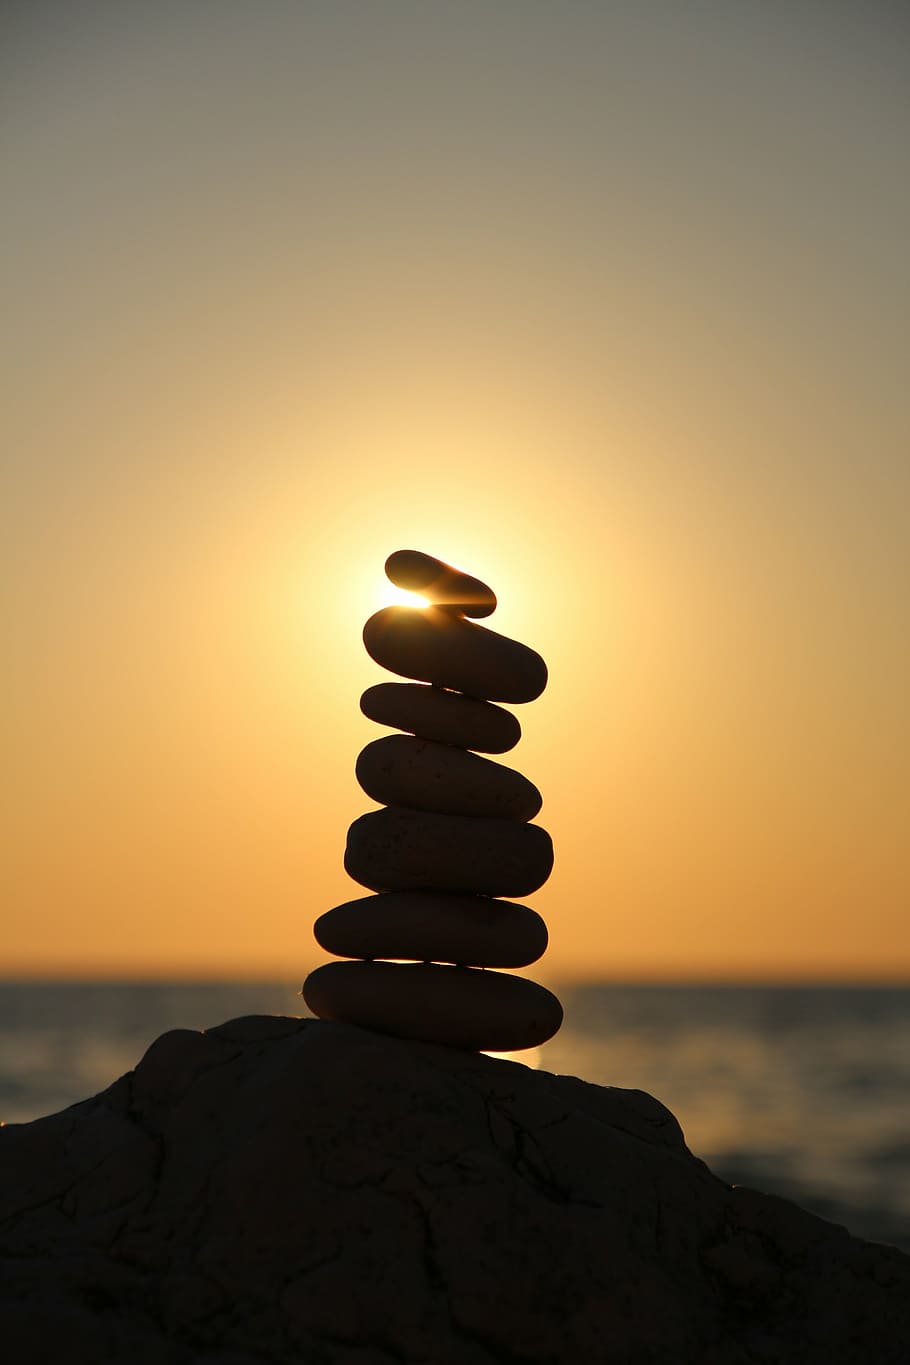 fotografía de silueta, equilibrio de piedra, equilibrio, piedras, torre de piedra, torre, capas, playa, relajación, mojón